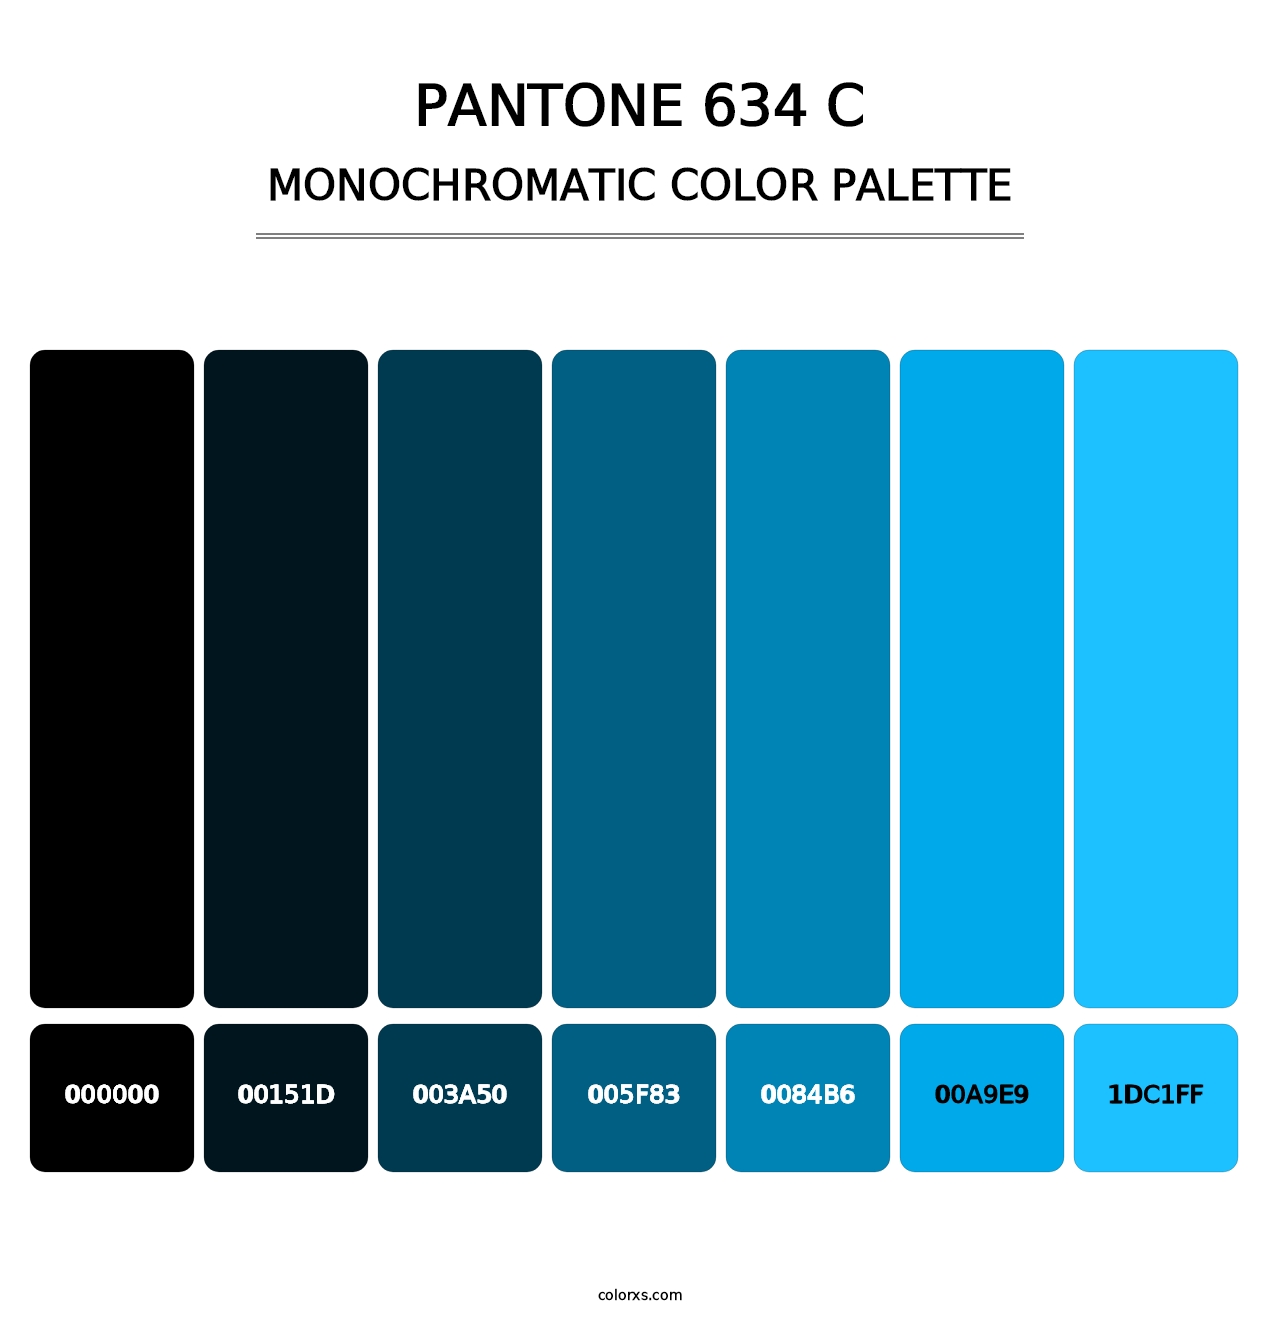 PANTONE 634 C - Monochromatic Color Palette